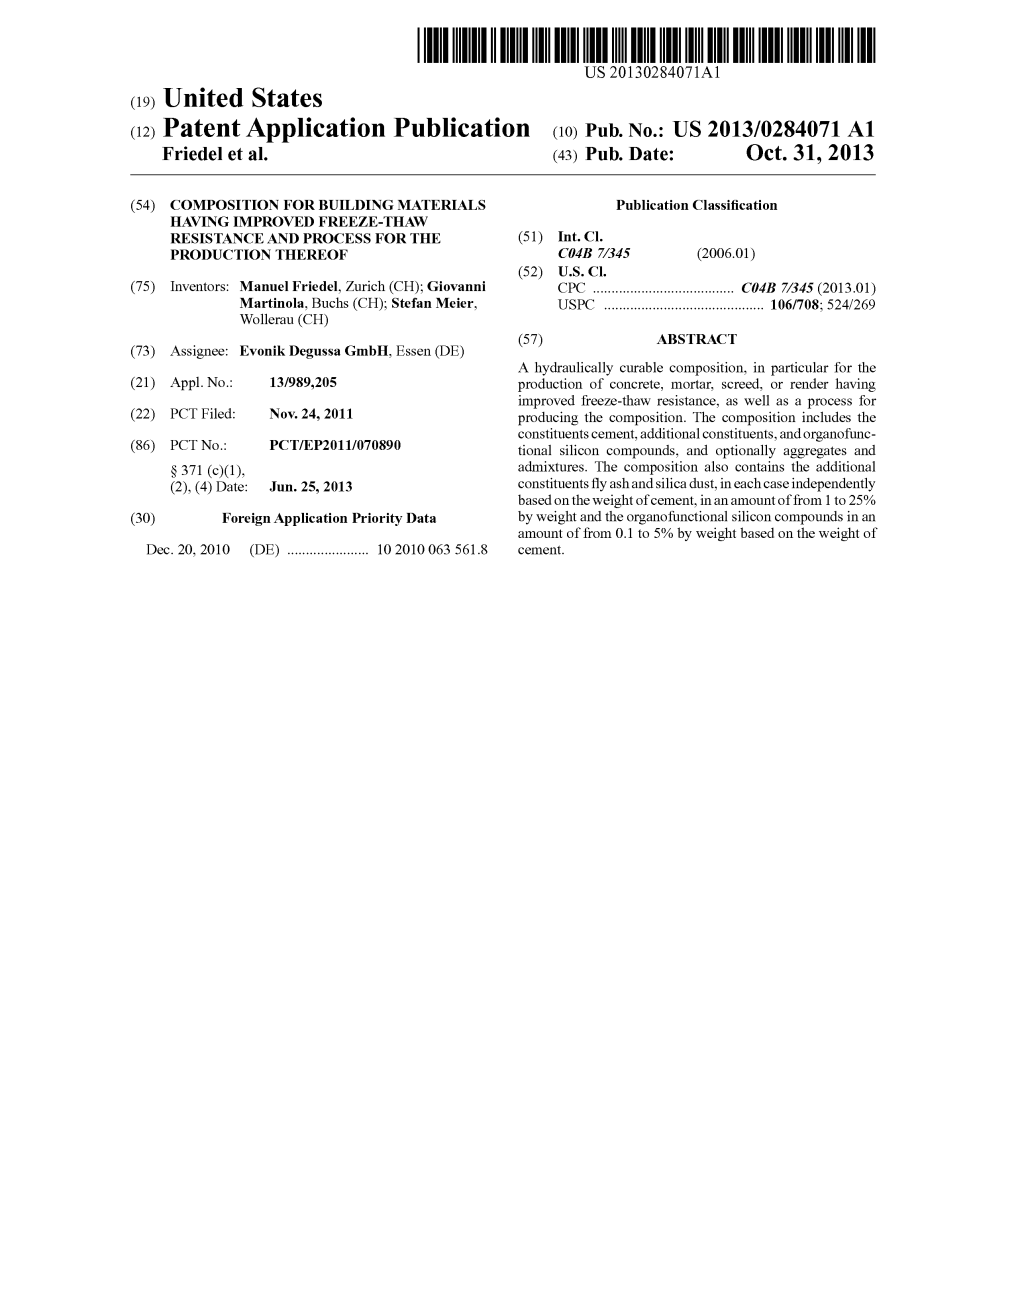 (12) Patent Application Publication (10) Pub. No.: US 2013/0284.071 A1 Friedel Et Al